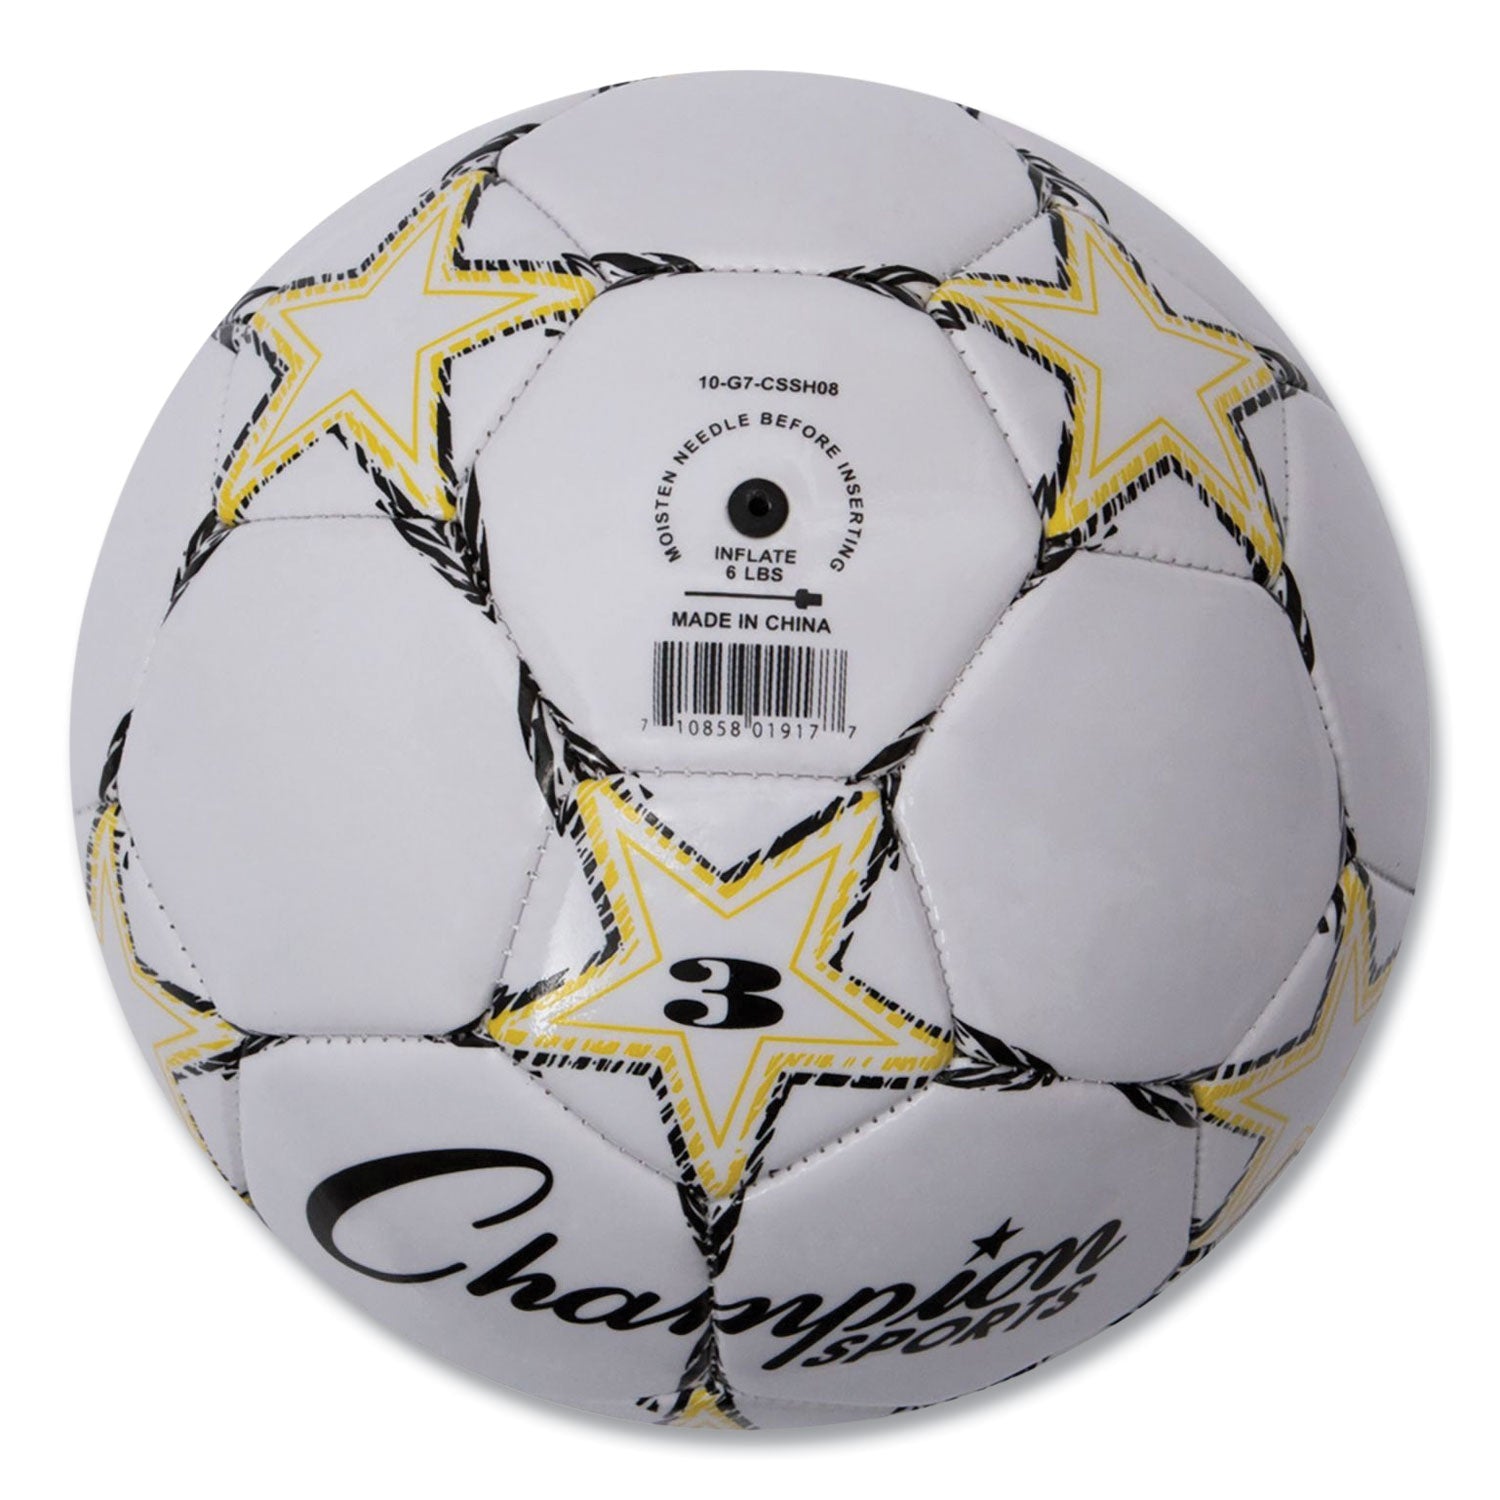 VIPER Soccer Ball, No. 3 Size, 7.25" to 7.5" Diameter, White - 